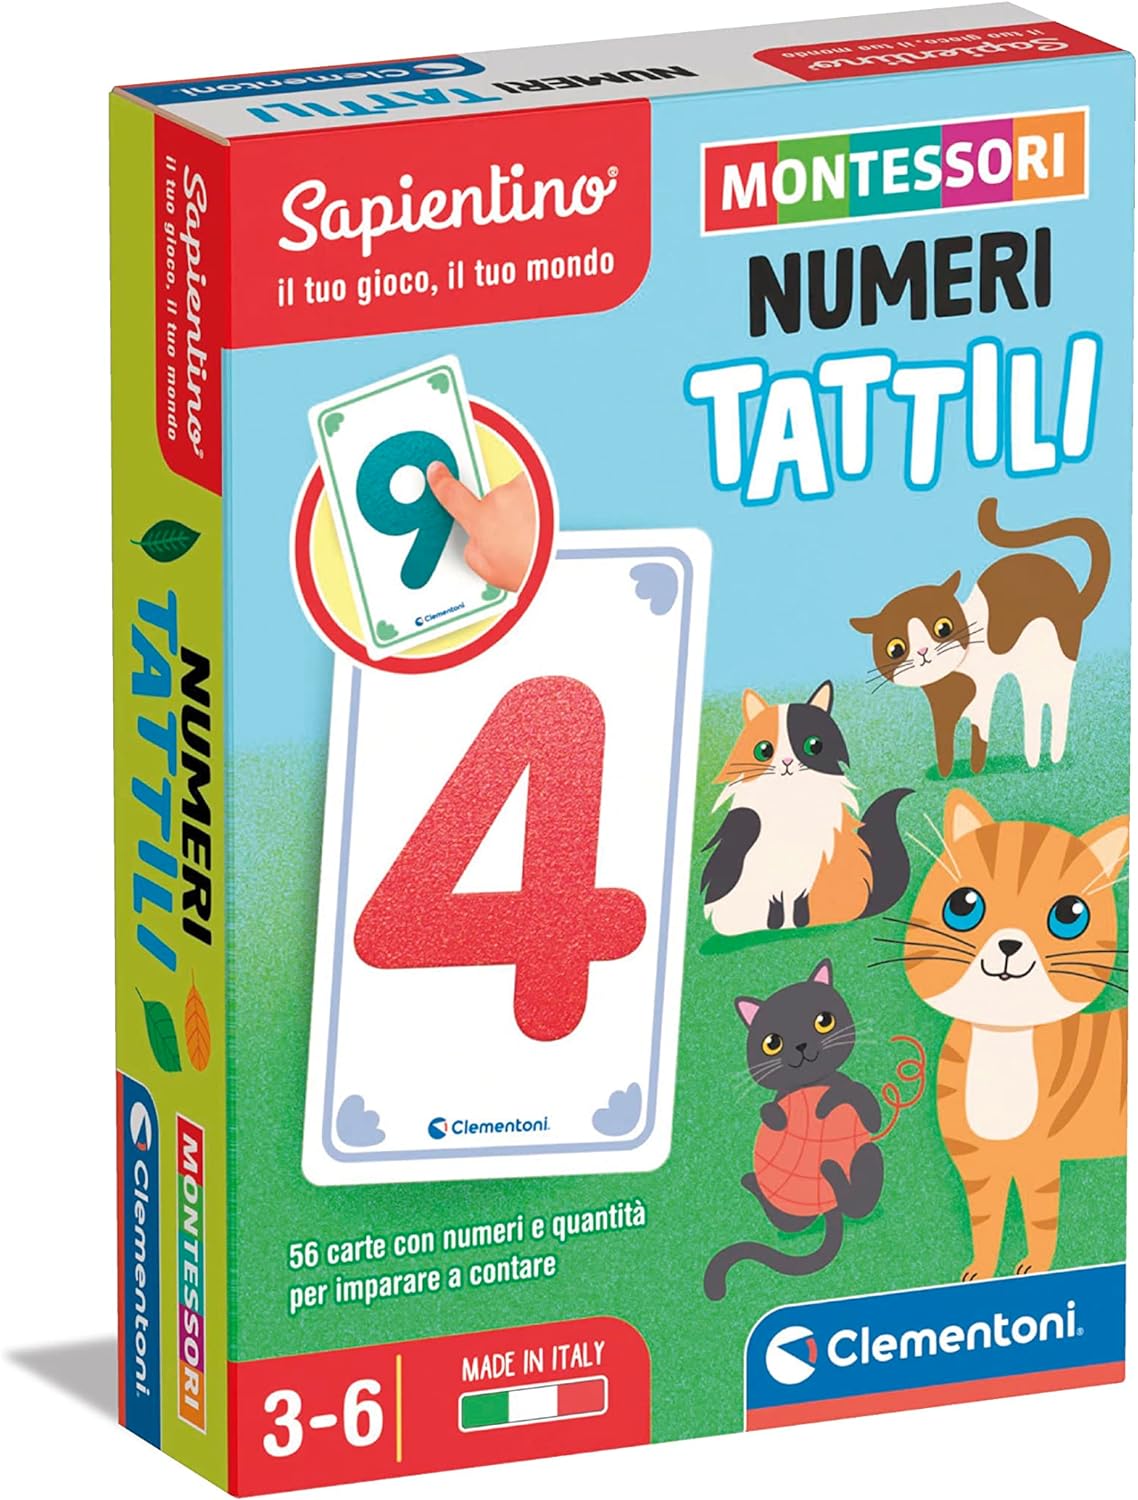 Clementoni - 16436 - Sapientino Carte - Numeri Tattili - Gioco Educativo 3  Anni, Flashcards Montessori